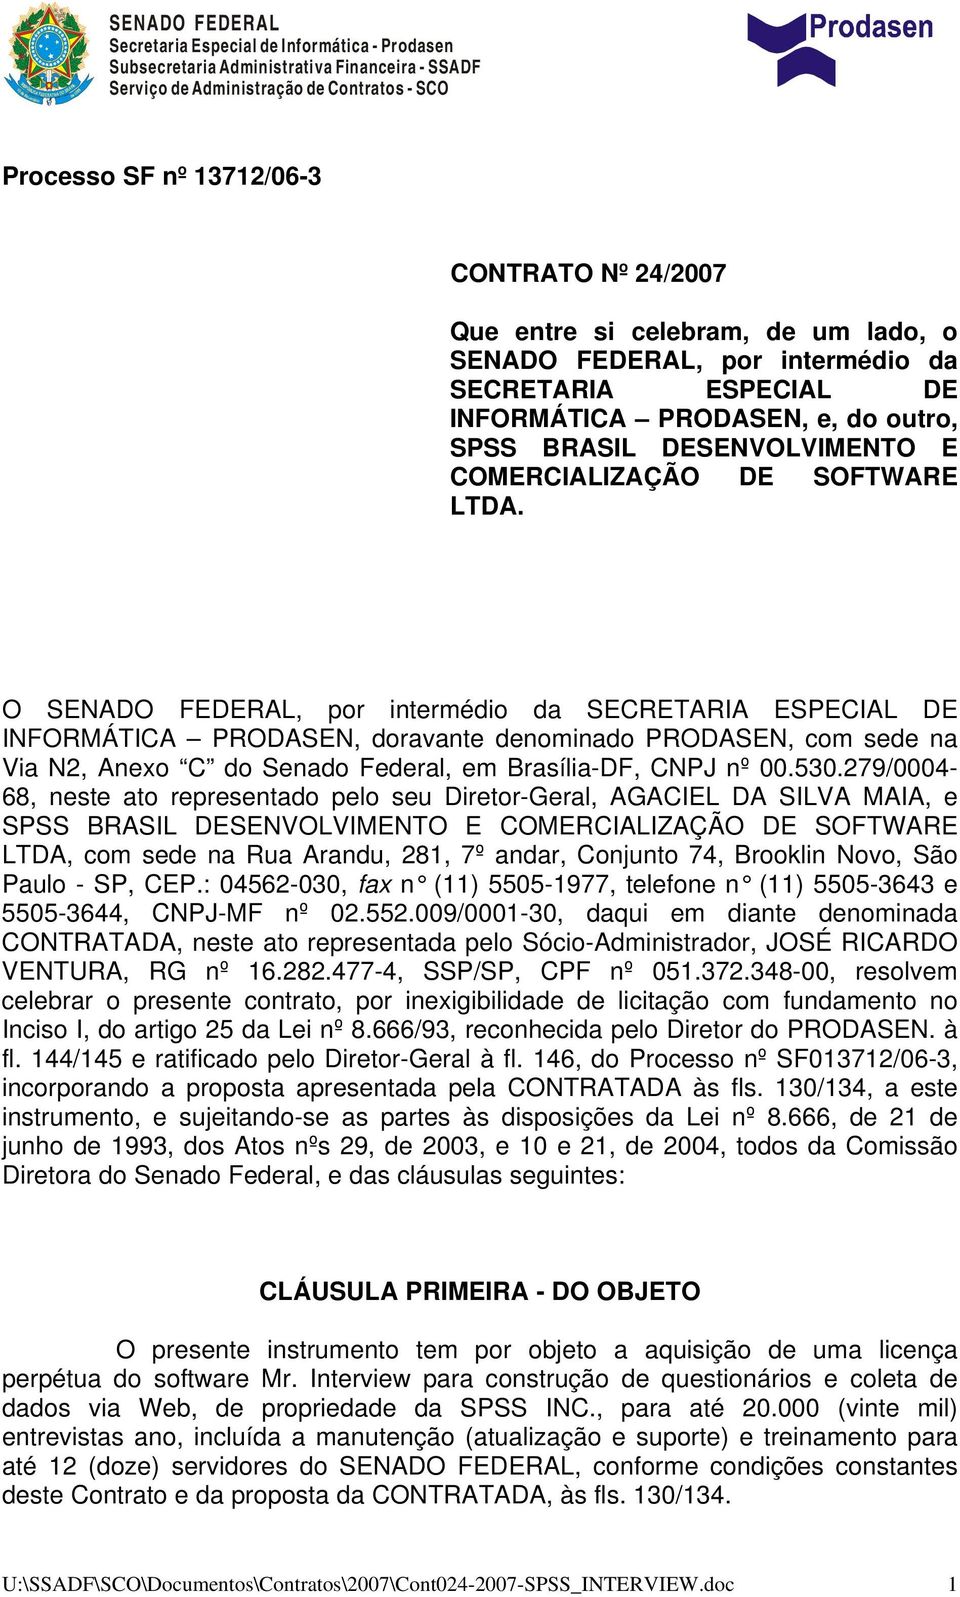 O SENADO FEDERAL, por intermédio da SECRETARIA ESPECIAL DE INFORMÁTICA PRODASEN, doravante denominado PRODASEN, com sede na Via N2, Anexo C do Senado Federal, em Brasília-DF, CNPJ nº 00.530.